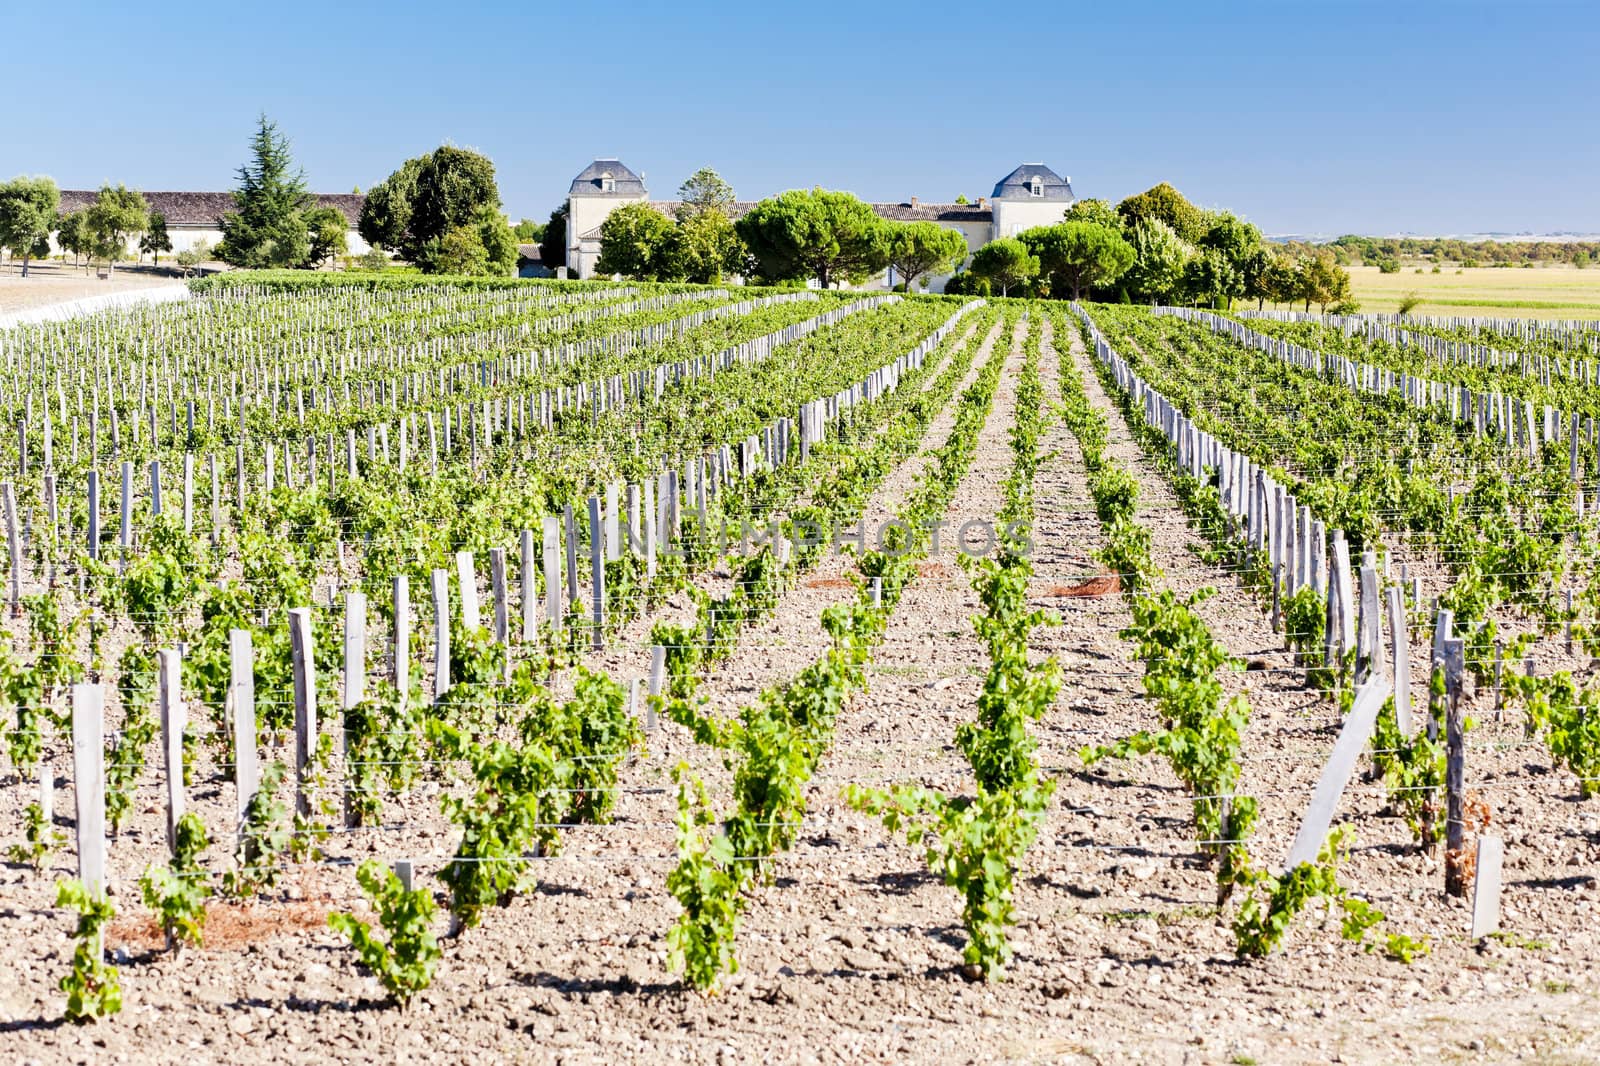 vineyard and Chateau Calon-Segur, Saint-Estephe, Bordeaux Region, France